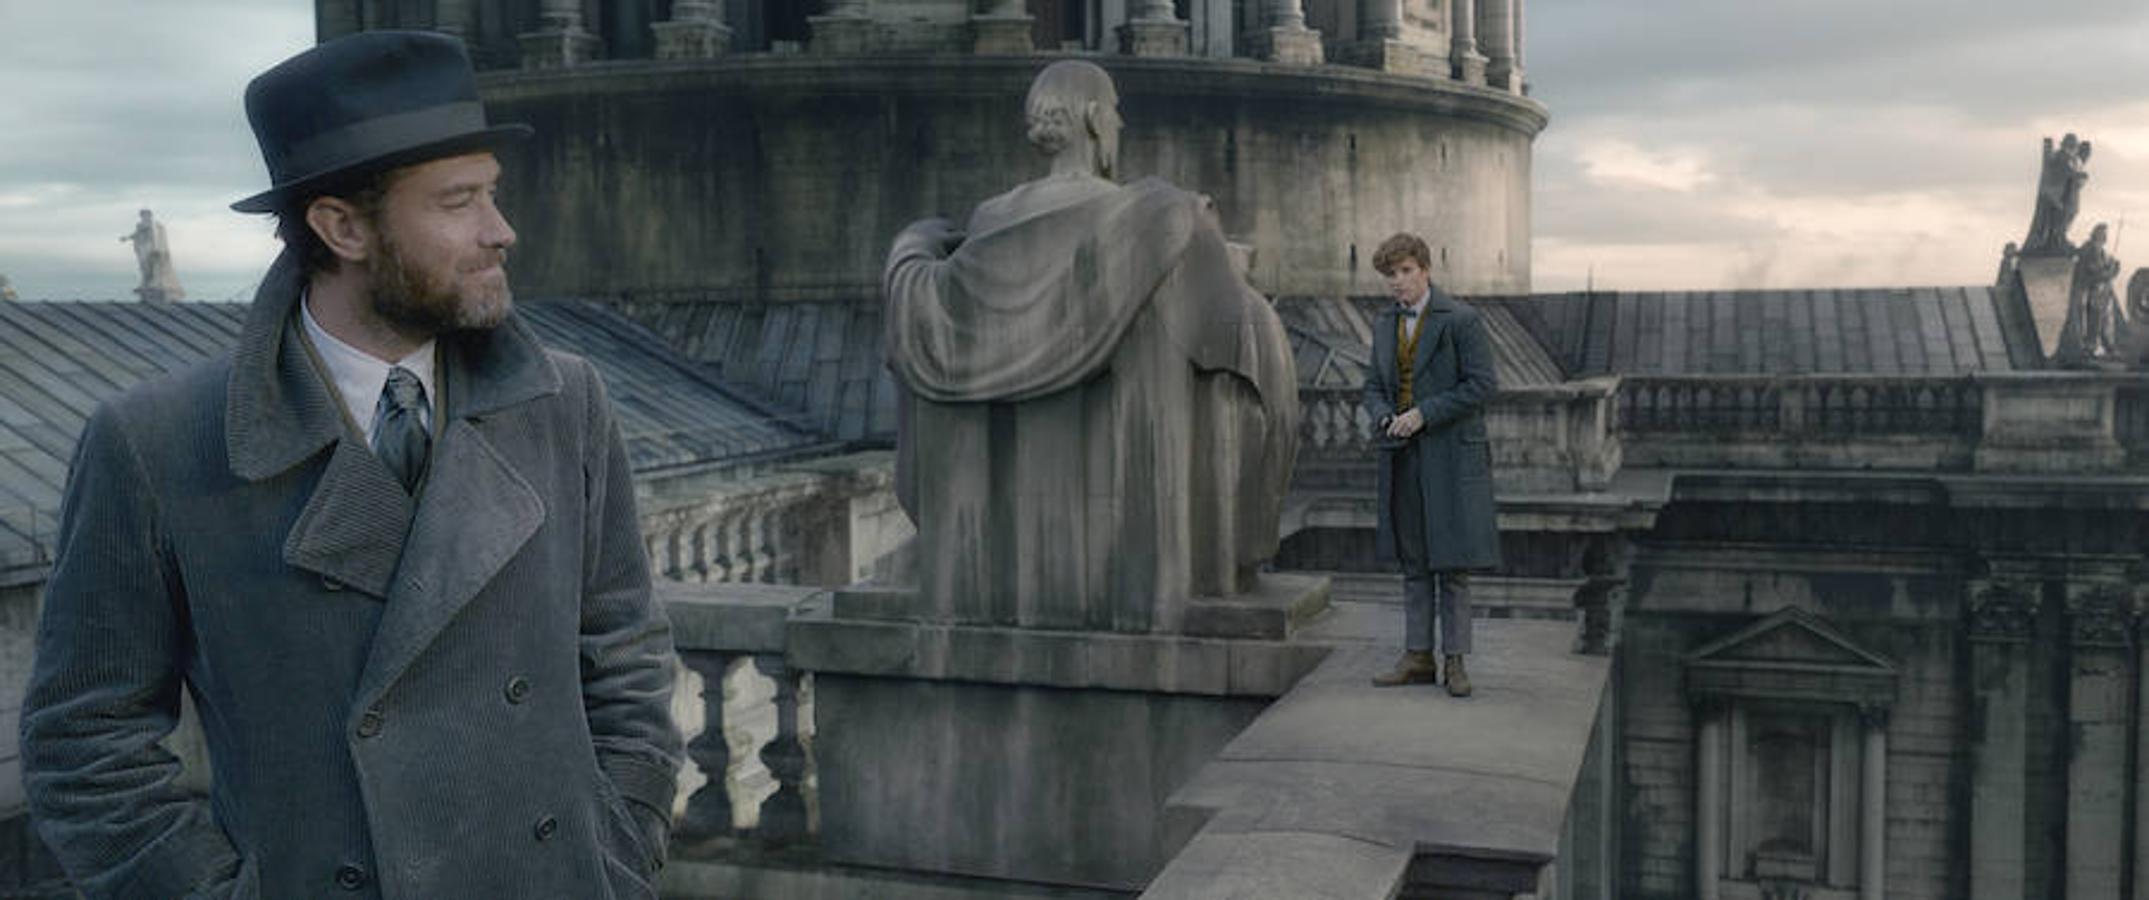 Galería: Las imágenes de la nueva película del universo Harry Potter